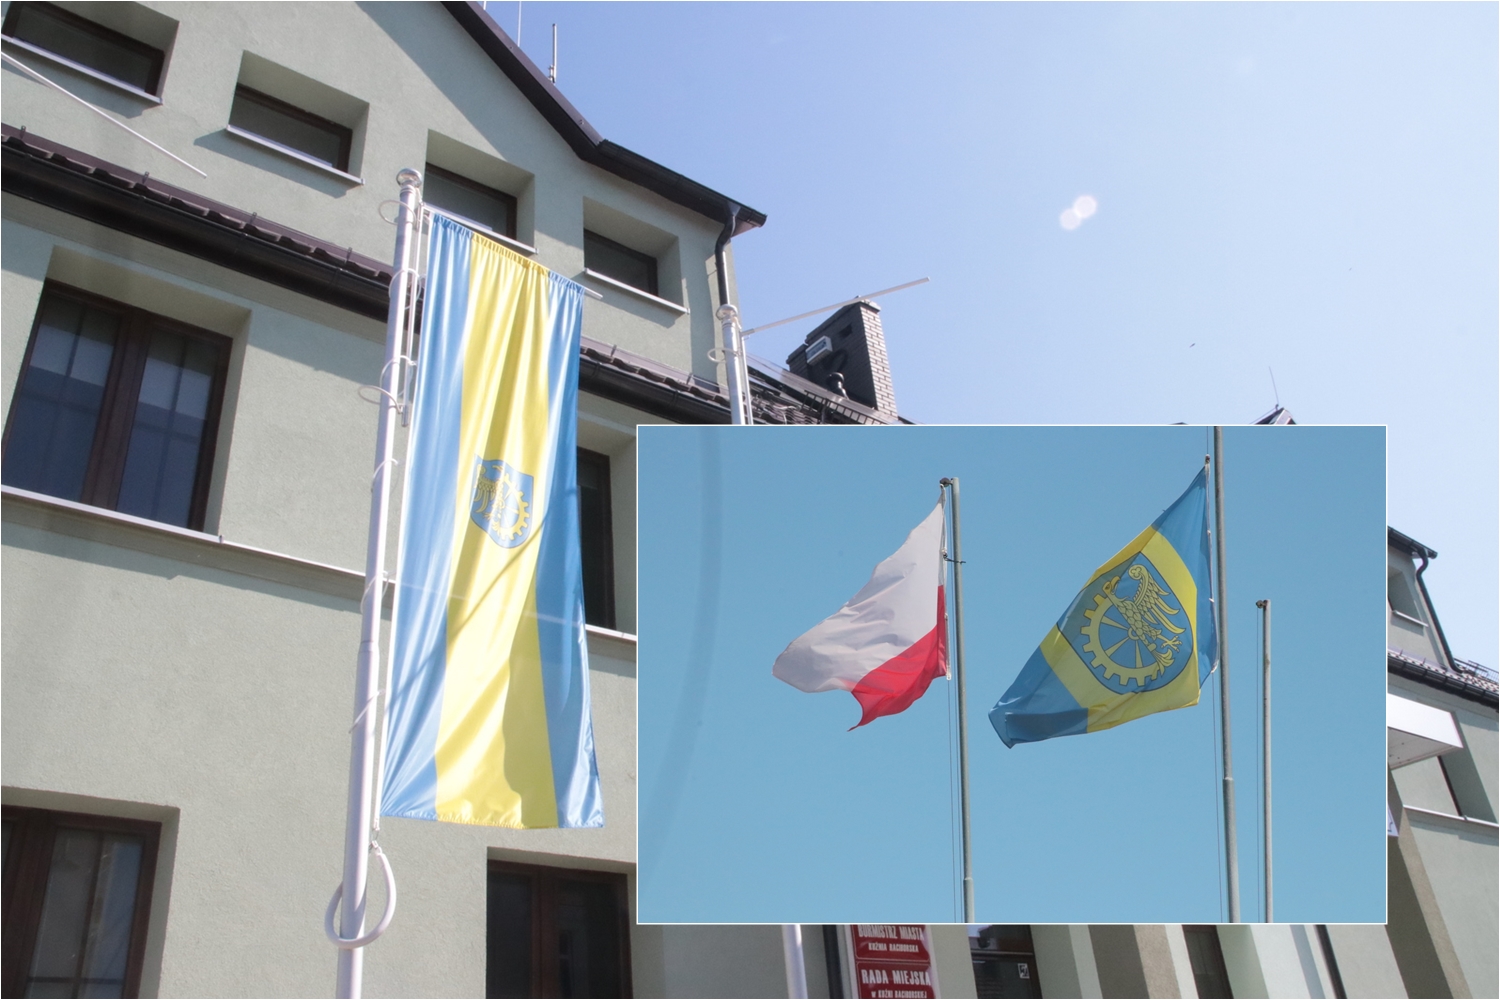 W Kuźni Raciborskiej zgodnie z zapowiedziami nie zawieszono górnośląskiej flagi na 15 lipca. Przed urzędem miejskim znajduje się flaga gminy, zaś na placu zwycięstwa dodatkowo powiewa flaga Polski